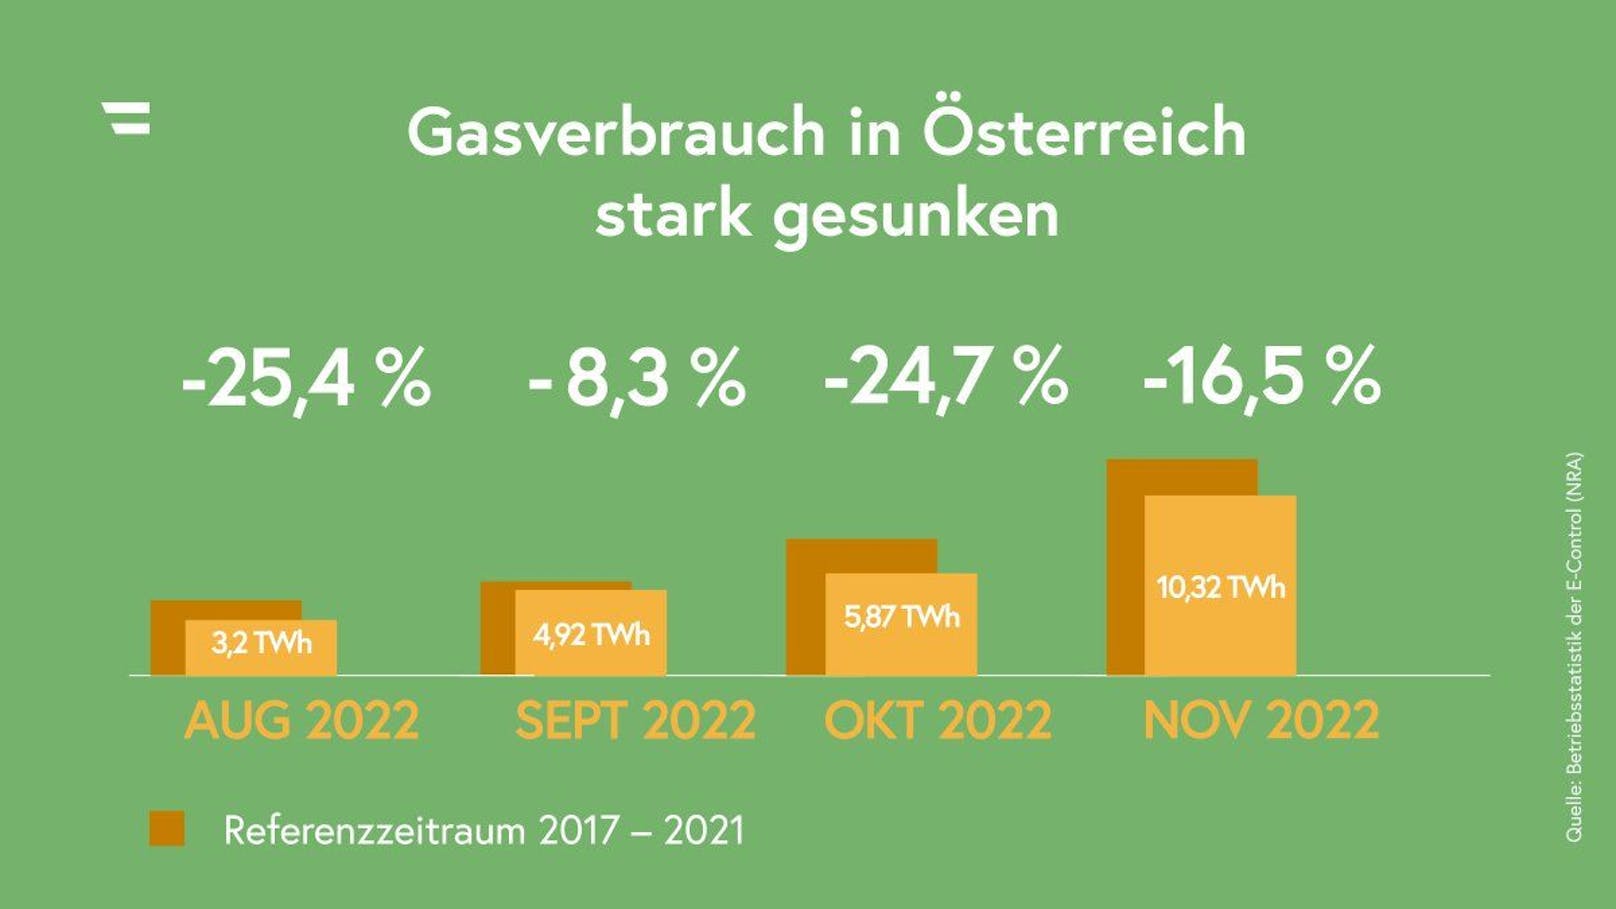 Der Gasverbrauch in Österreich ist im Vergleich zu den letzten 5 Jahren deutlich gesunken.